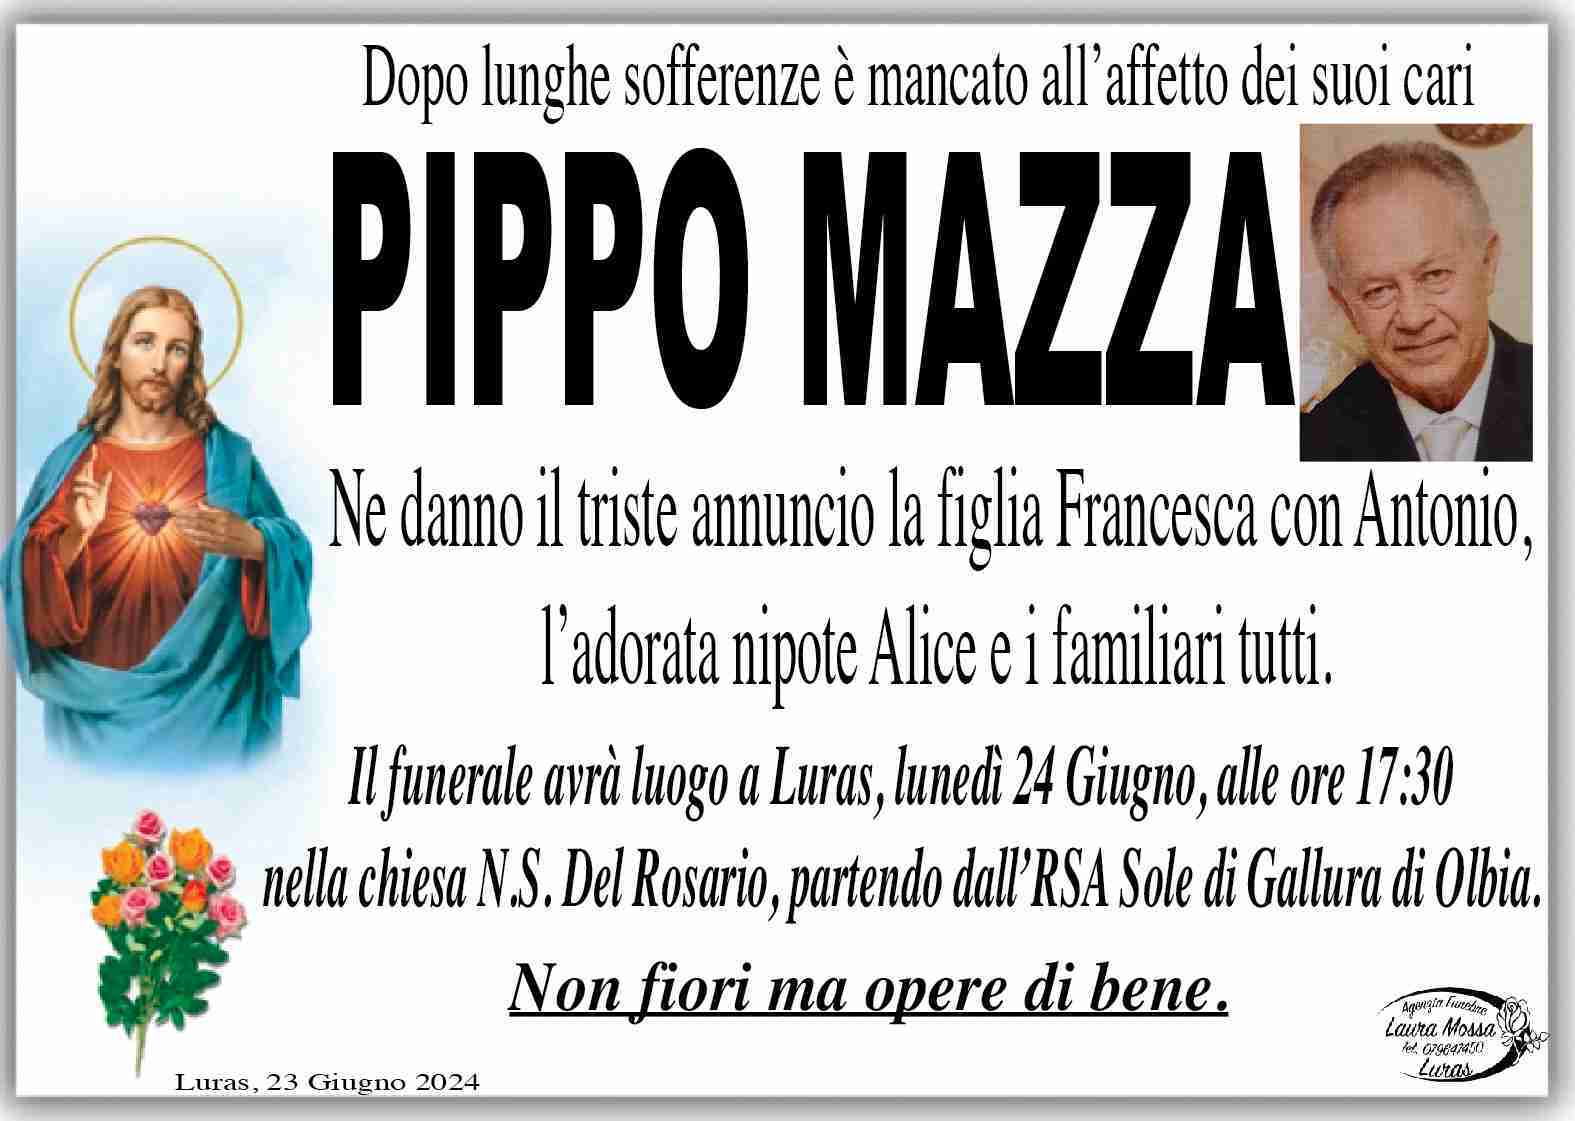 Pippo Mazza